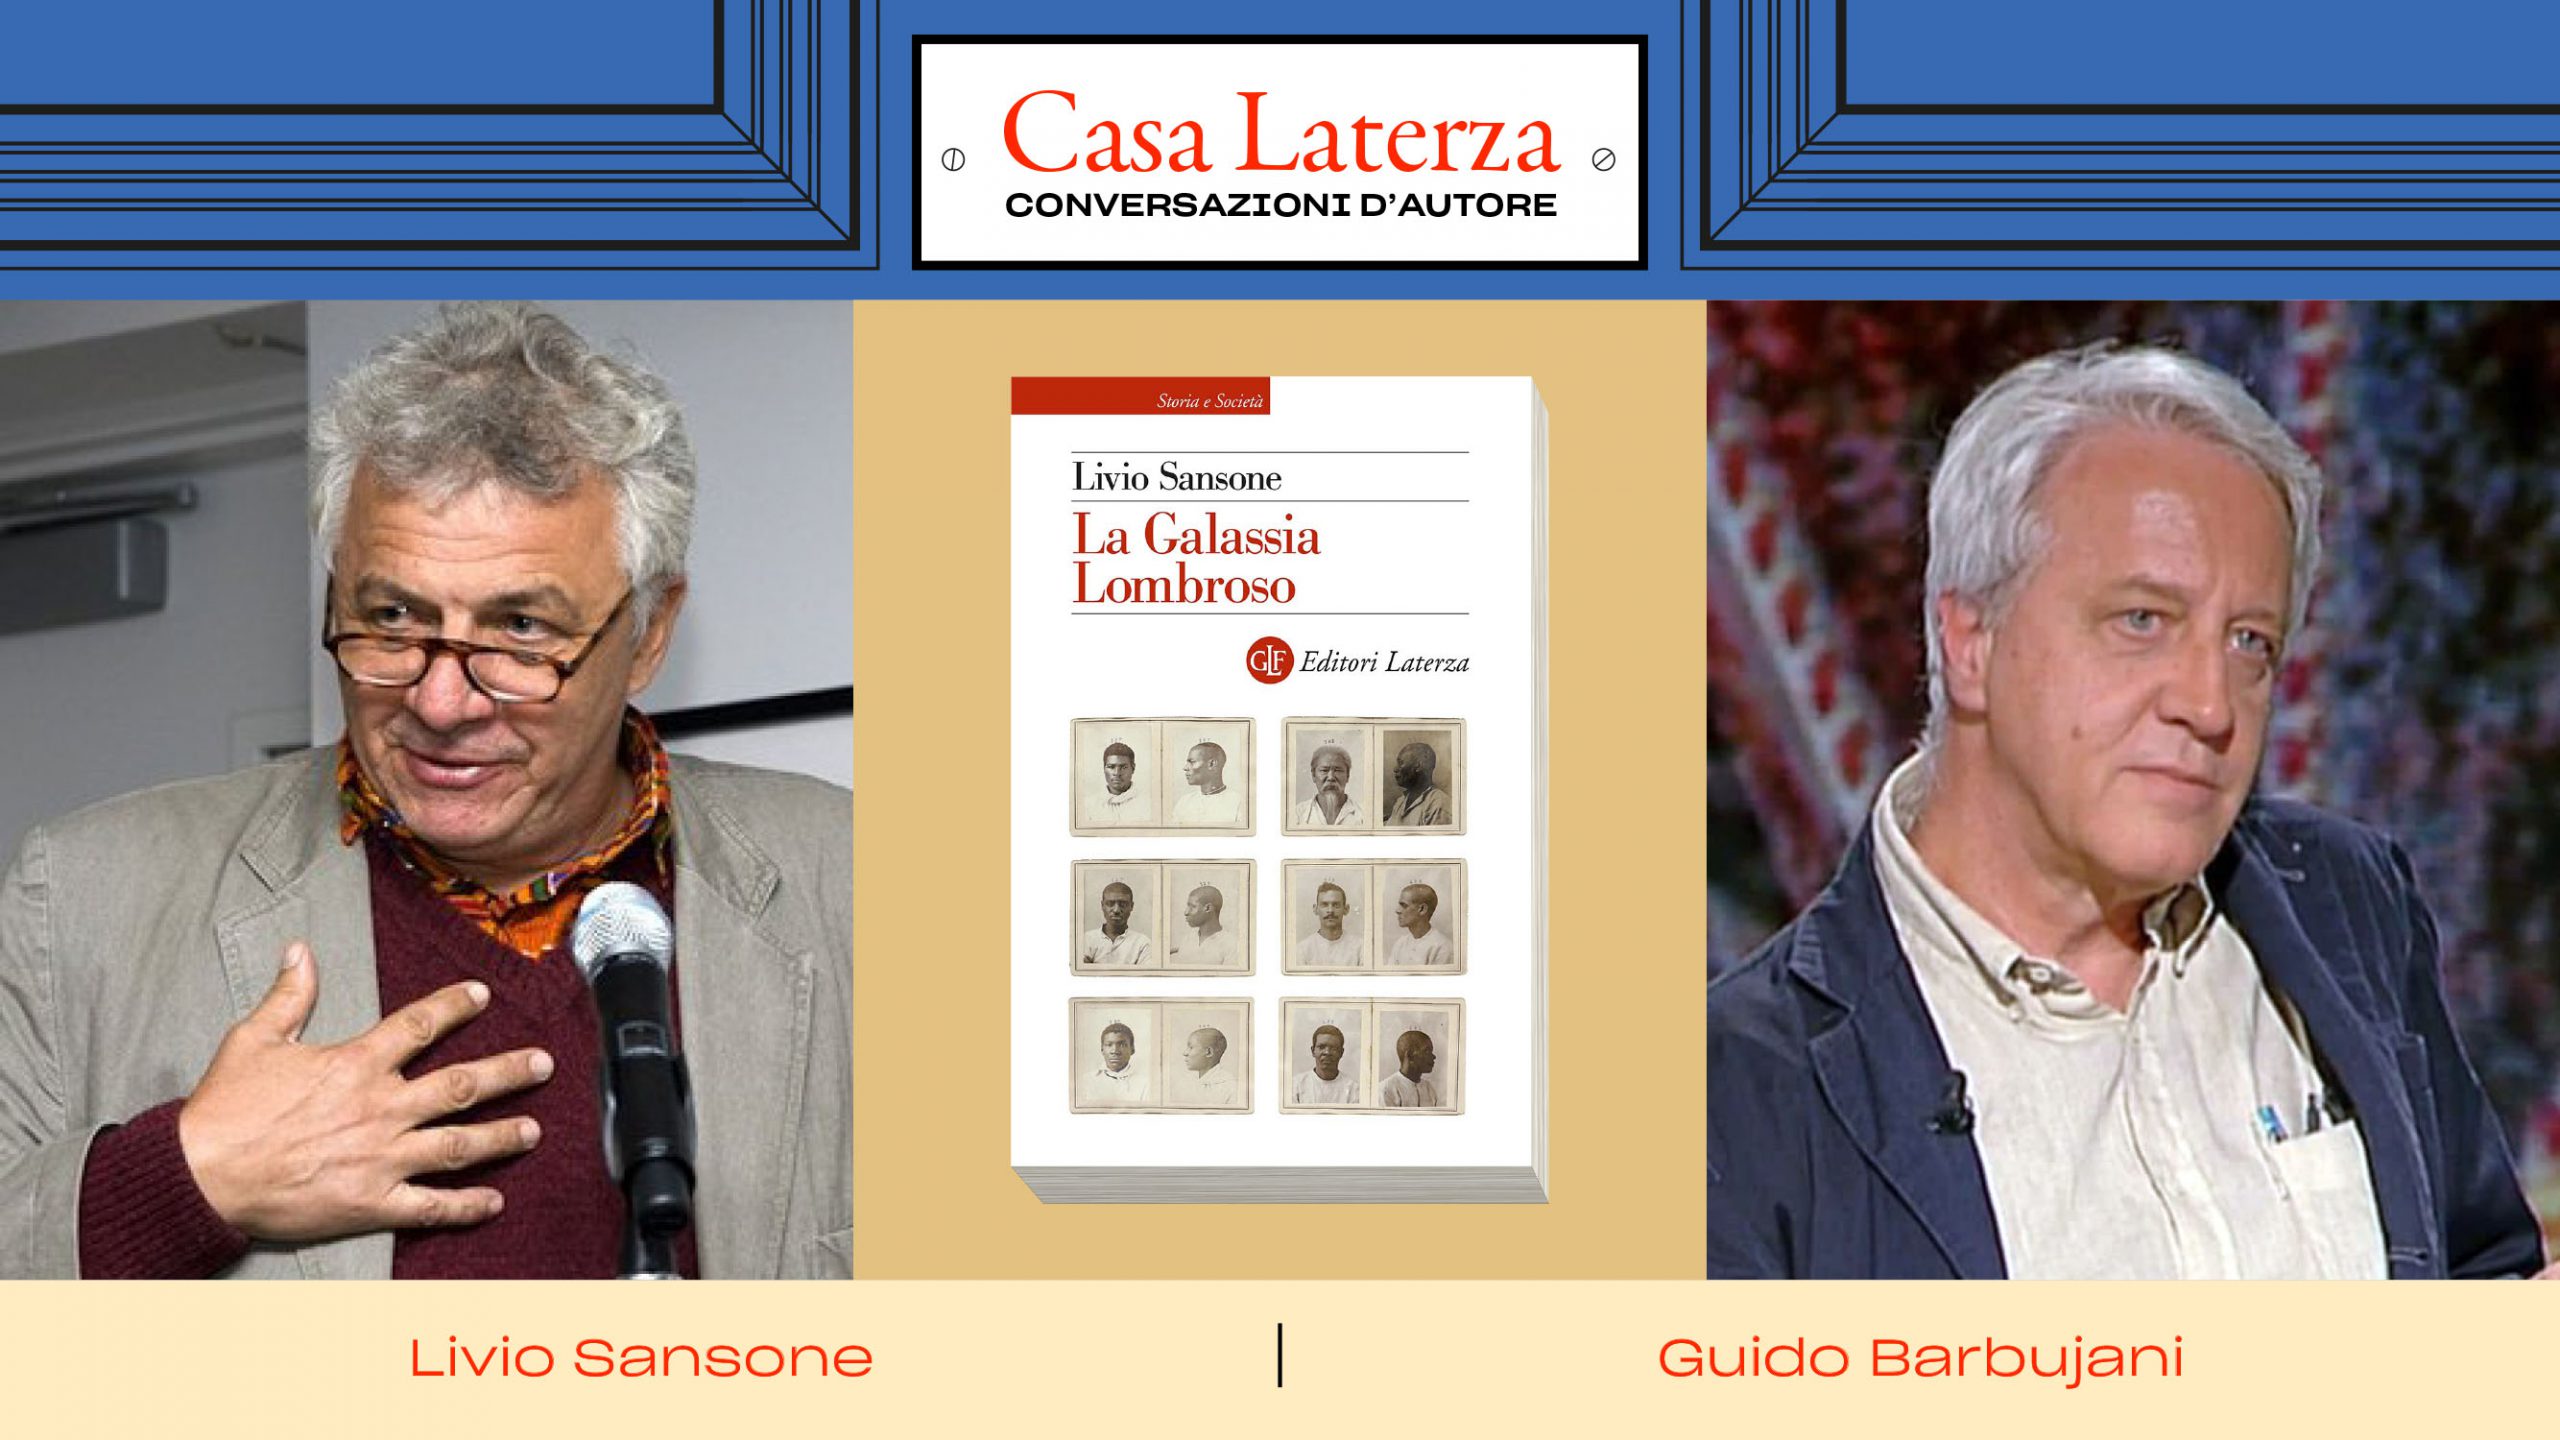 #CasaLaterza: Livio Sansone dialoga con Guido Barbujani